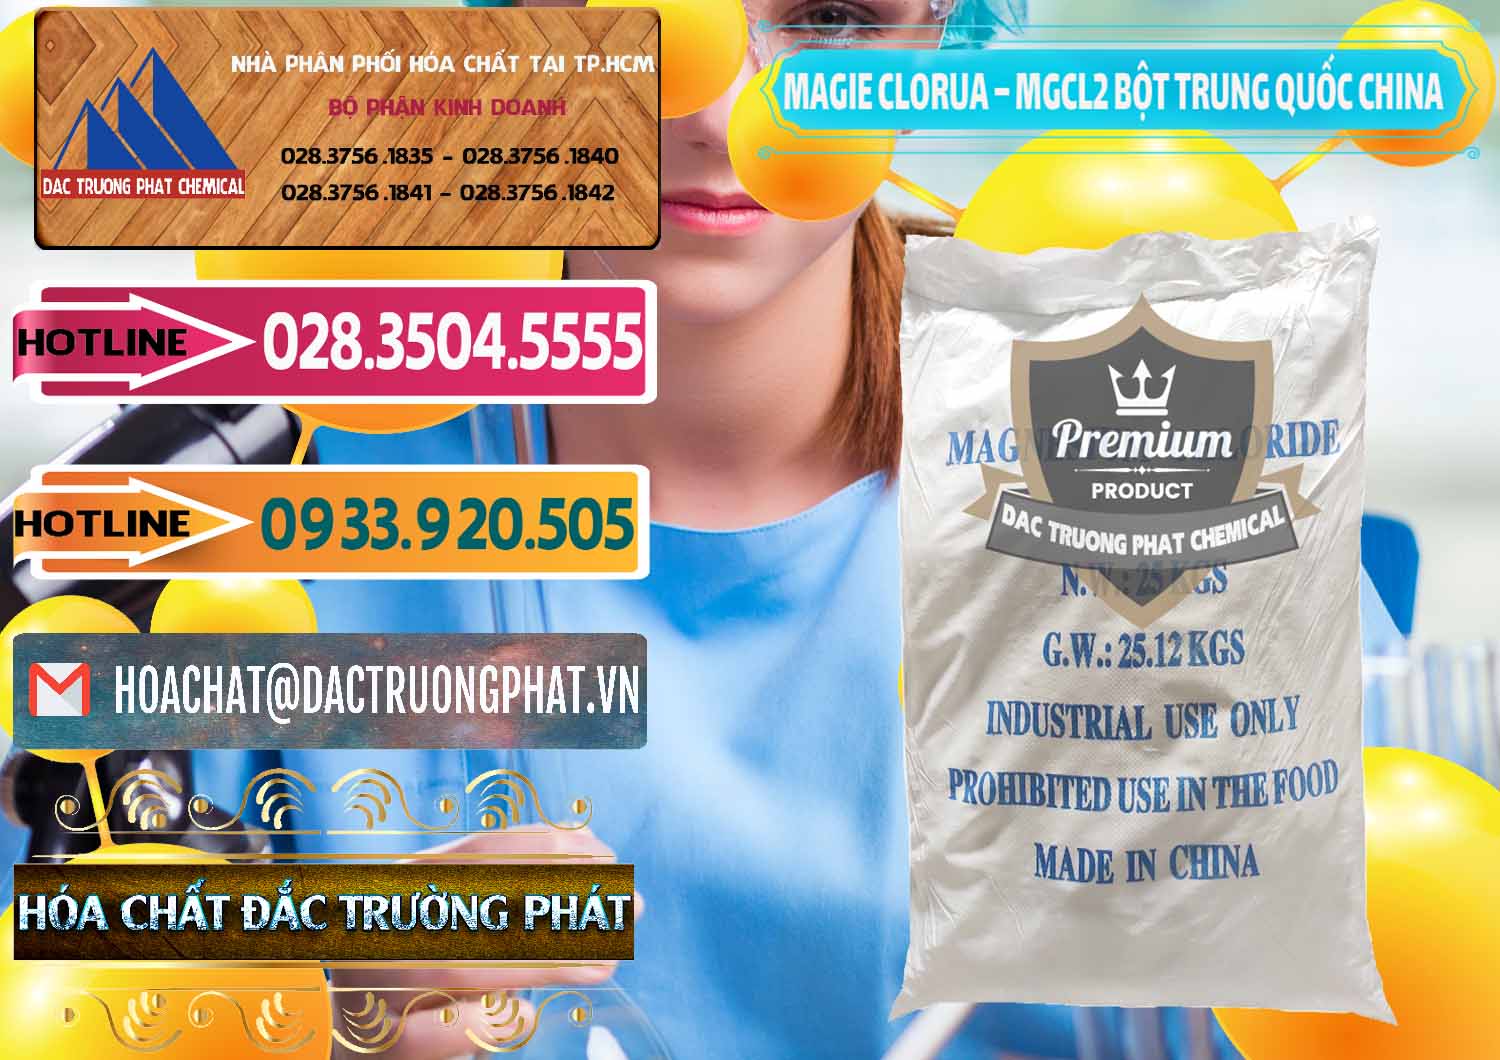 Đơn vị chuyên bán ( cung ứng ) Magie Clorua – MGCL2 96% Dạng Bột Bao Chữ Xanh Trung Quốc China - 0207 - Nhập khẩu & phân phối hóa chất tại TP.HCM - dactruongphat.vn